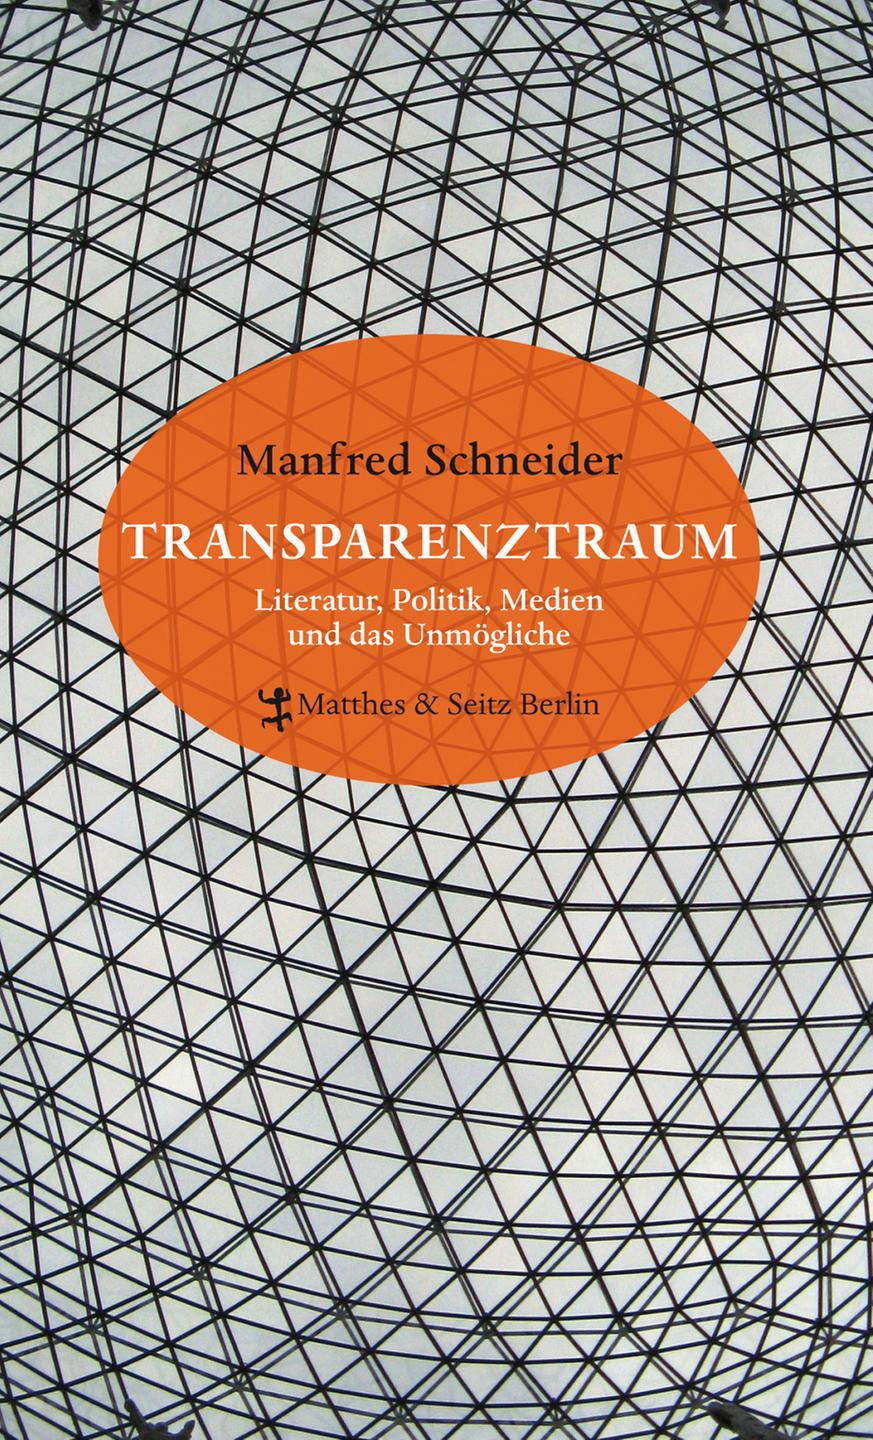 "Transparenztraum. Literatur, Politik, Medien und das Unmögliche"